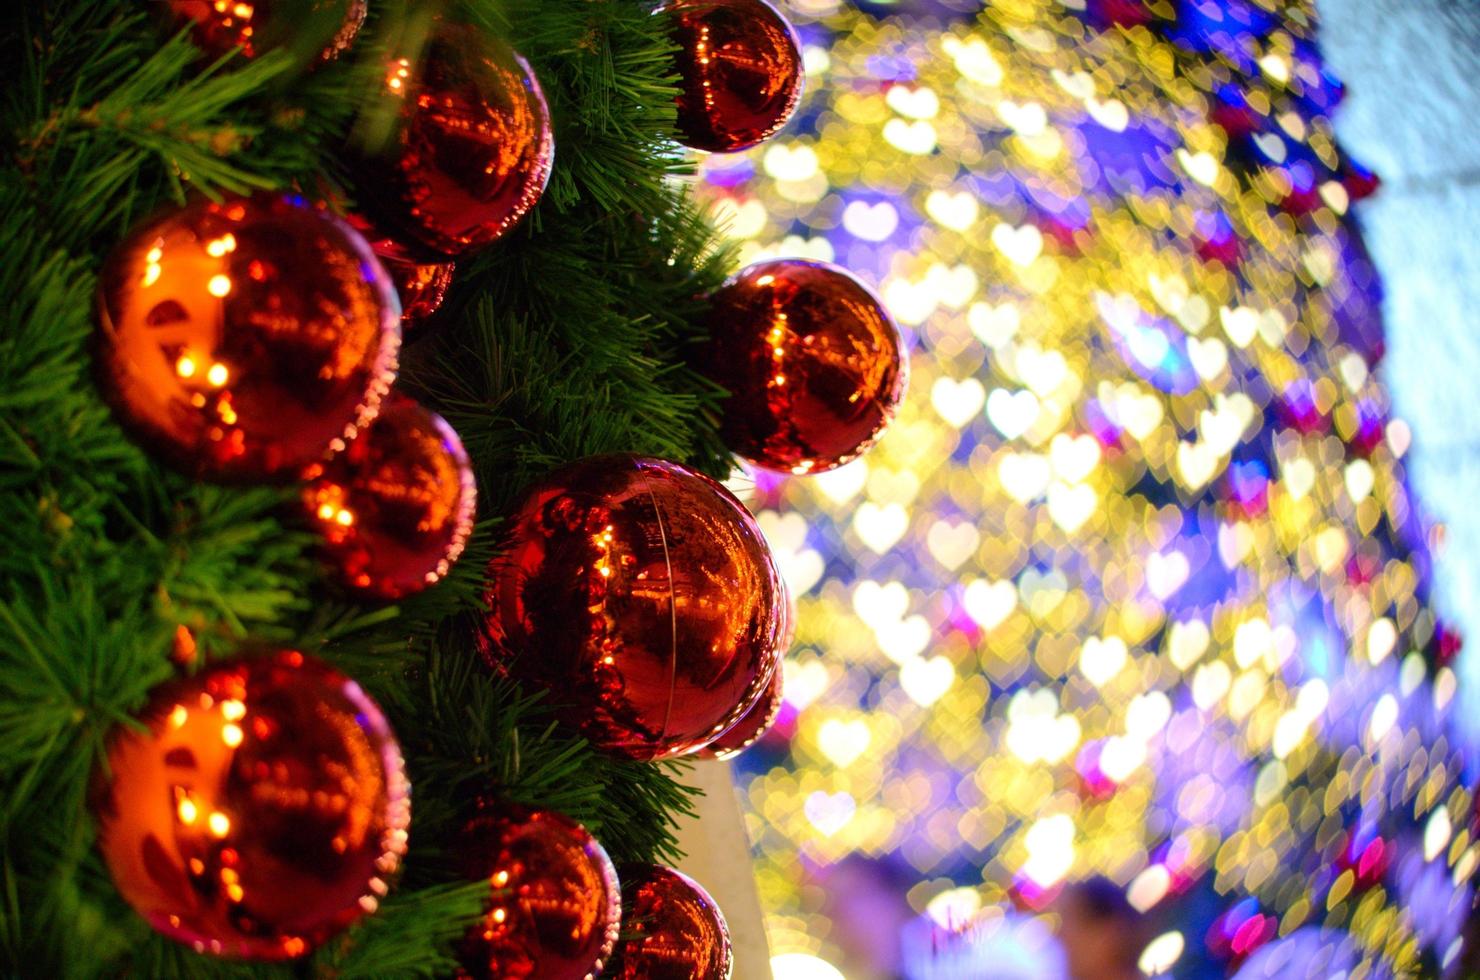 röd struntsak prydnad hängande på jul träd med färgrik hjärta form bokeh bakgrund från annan ett för jul Semester foto